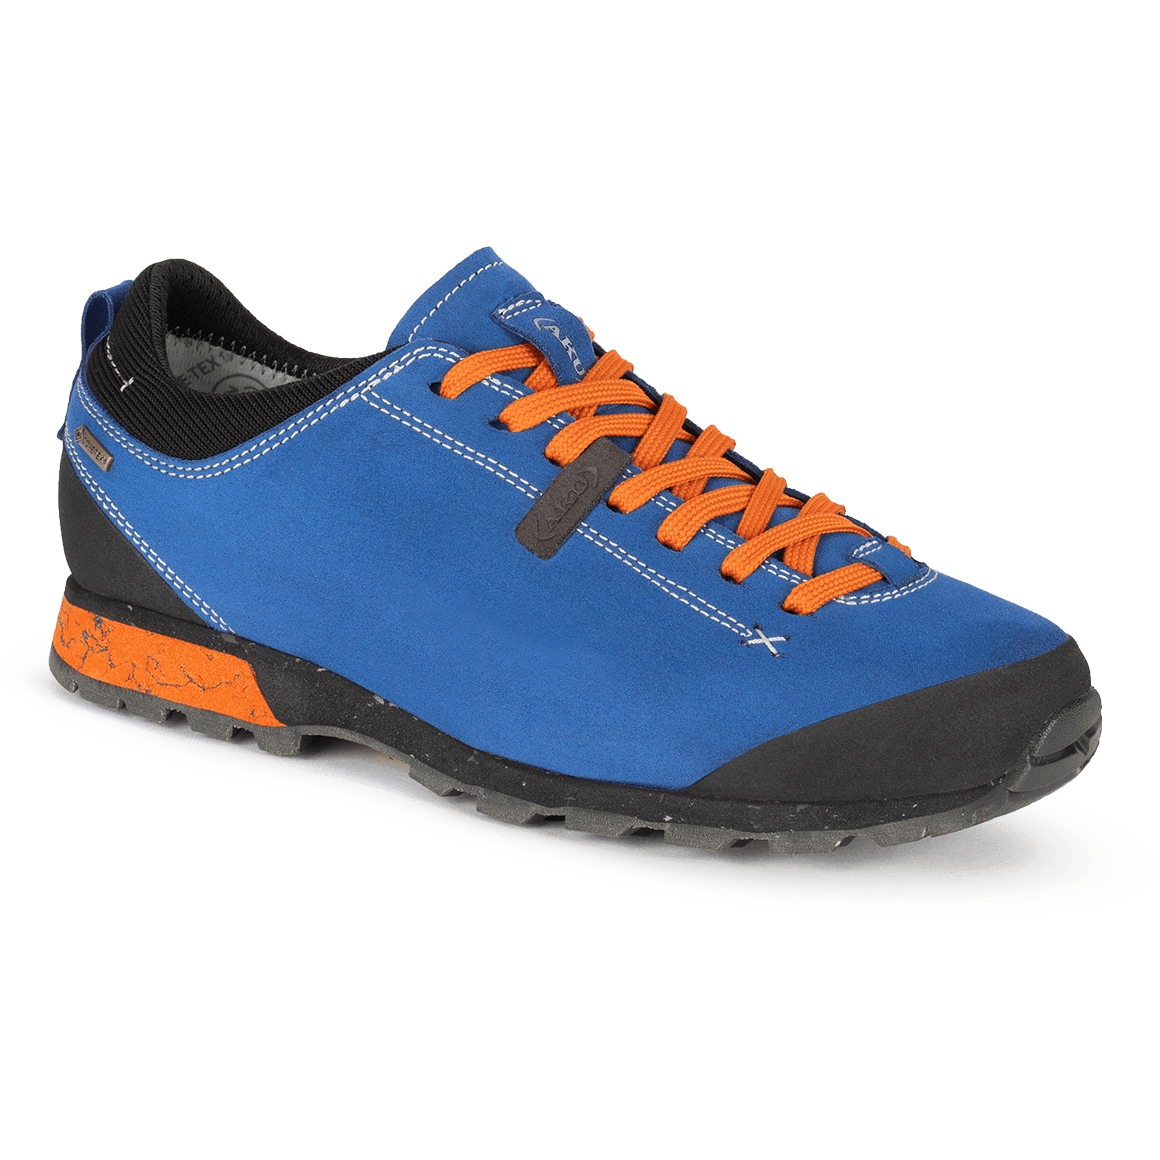 Produktbild von AKU Bellamont 3 V-Light GTX Schuh - Blau-Orange